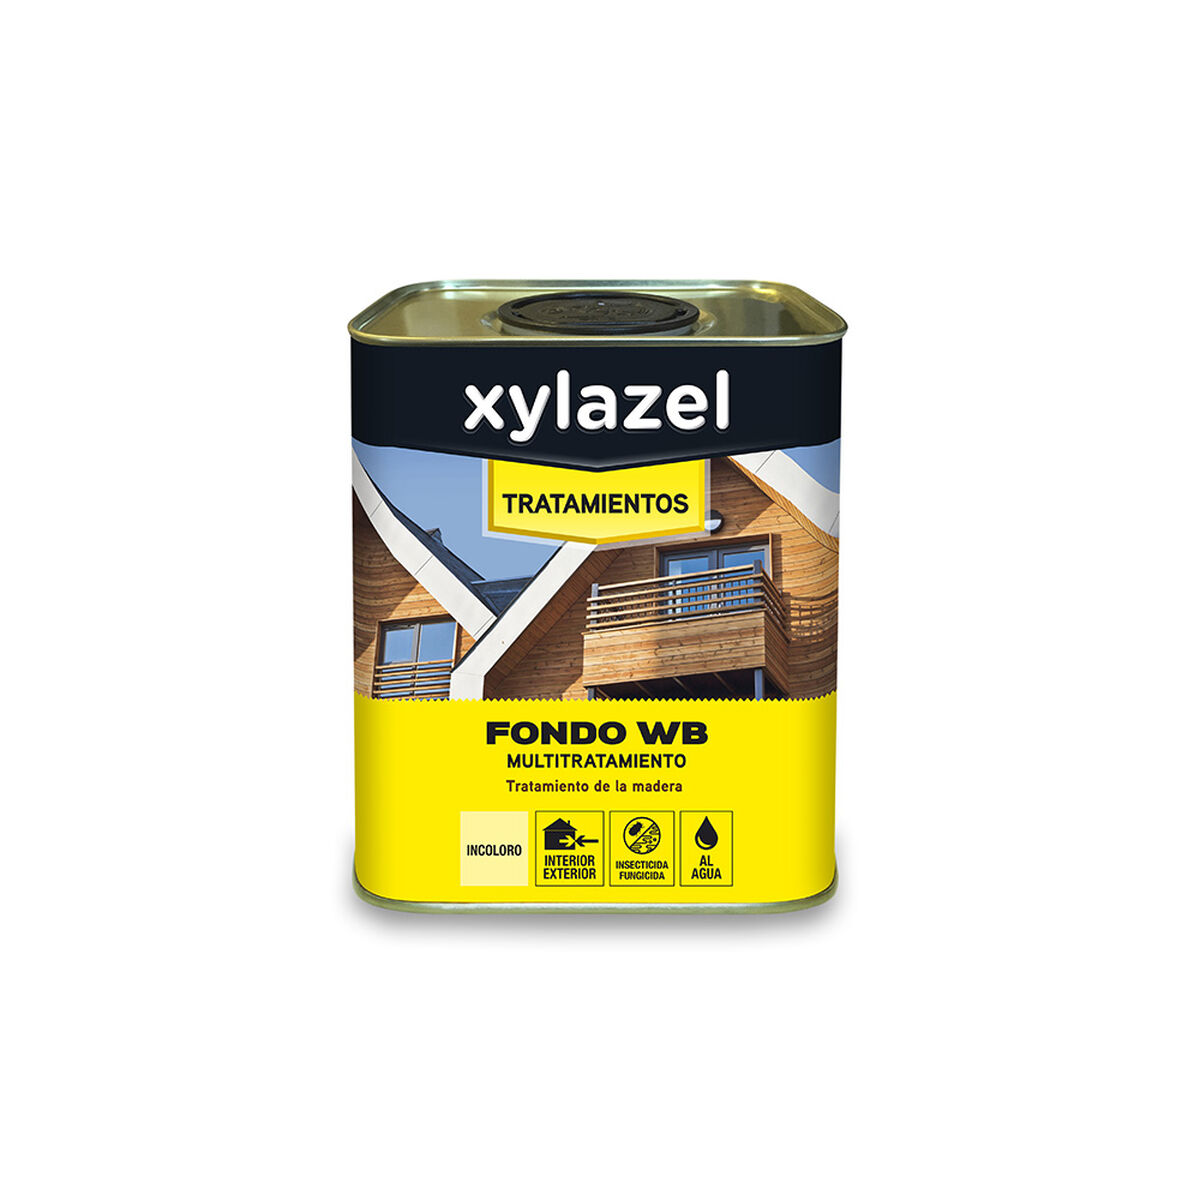 Protecteur de surface Xylazel Fondo WB Multi 5396689 Traitement À l'eau Incolore 4 L